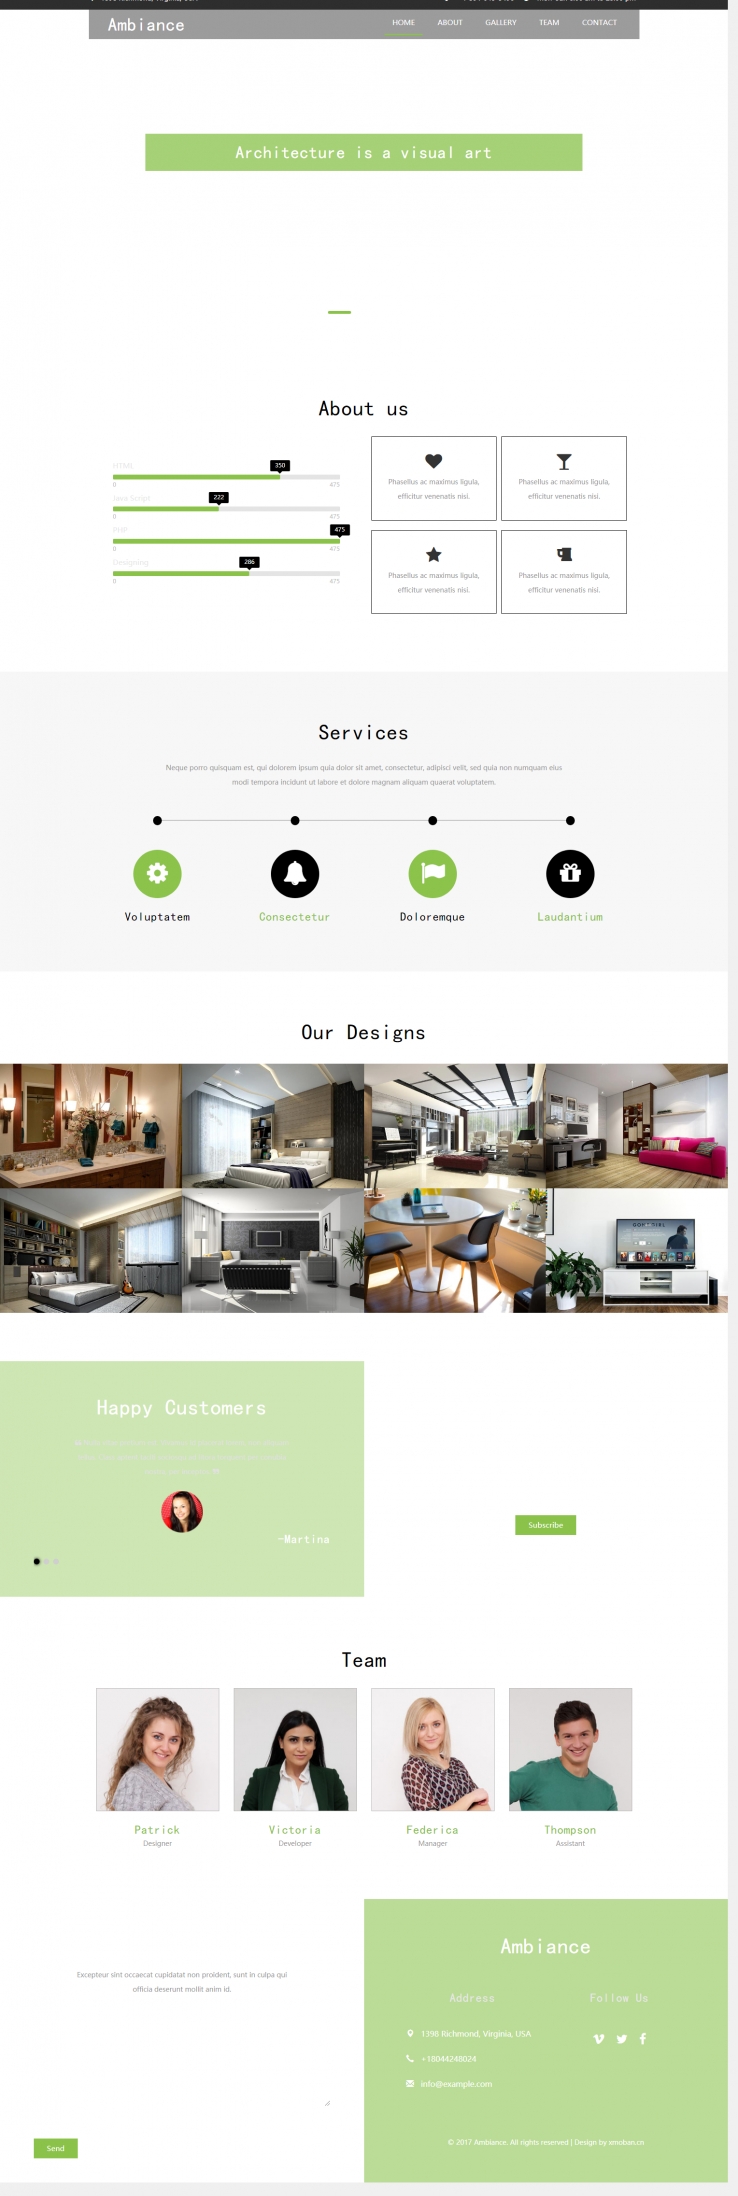 绿色欧美风格的室内装修设计企业网站源码下载